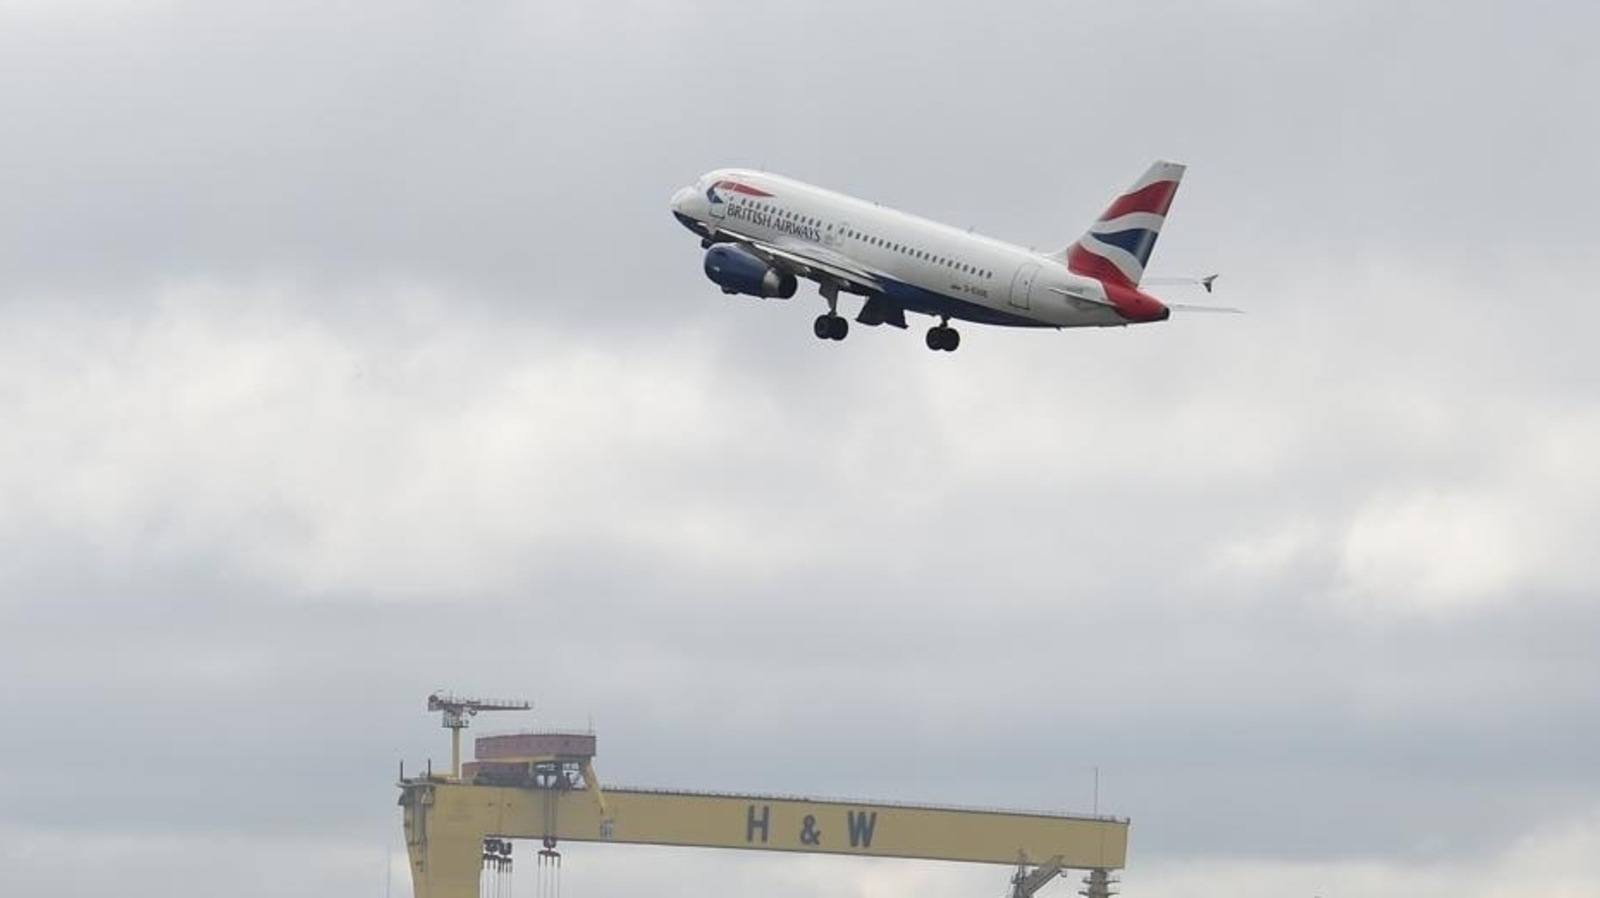 Watch: British Airways flight lands, tilts sideways and takes off at London’s Heathrow | World News